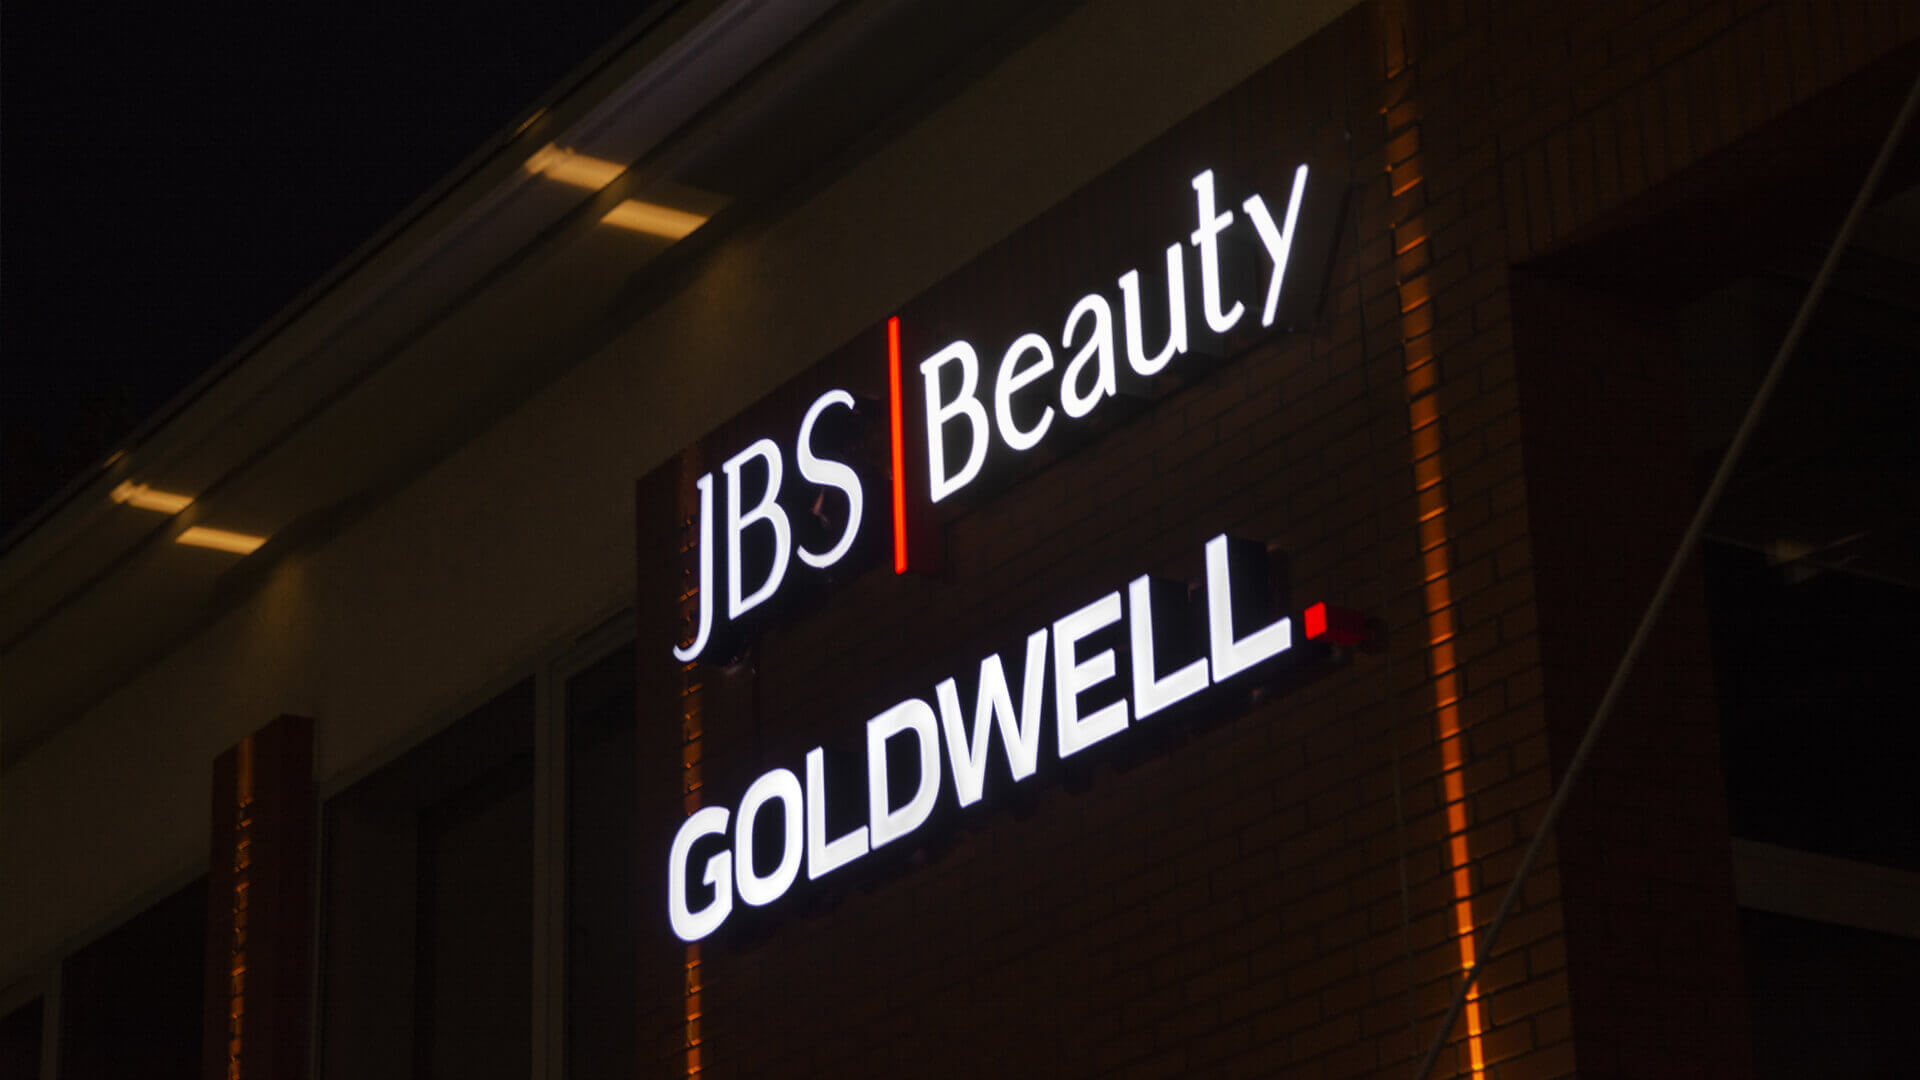 goldwell goldwel - jbs-goldwell-bauty-litery-kolorowe-podswietlane-led-litery-na-scianie-budynku-litery-na-wysokosci-litery-na-ceglach-litery-na-biurowcu-gdansk-letnica (11).jpg